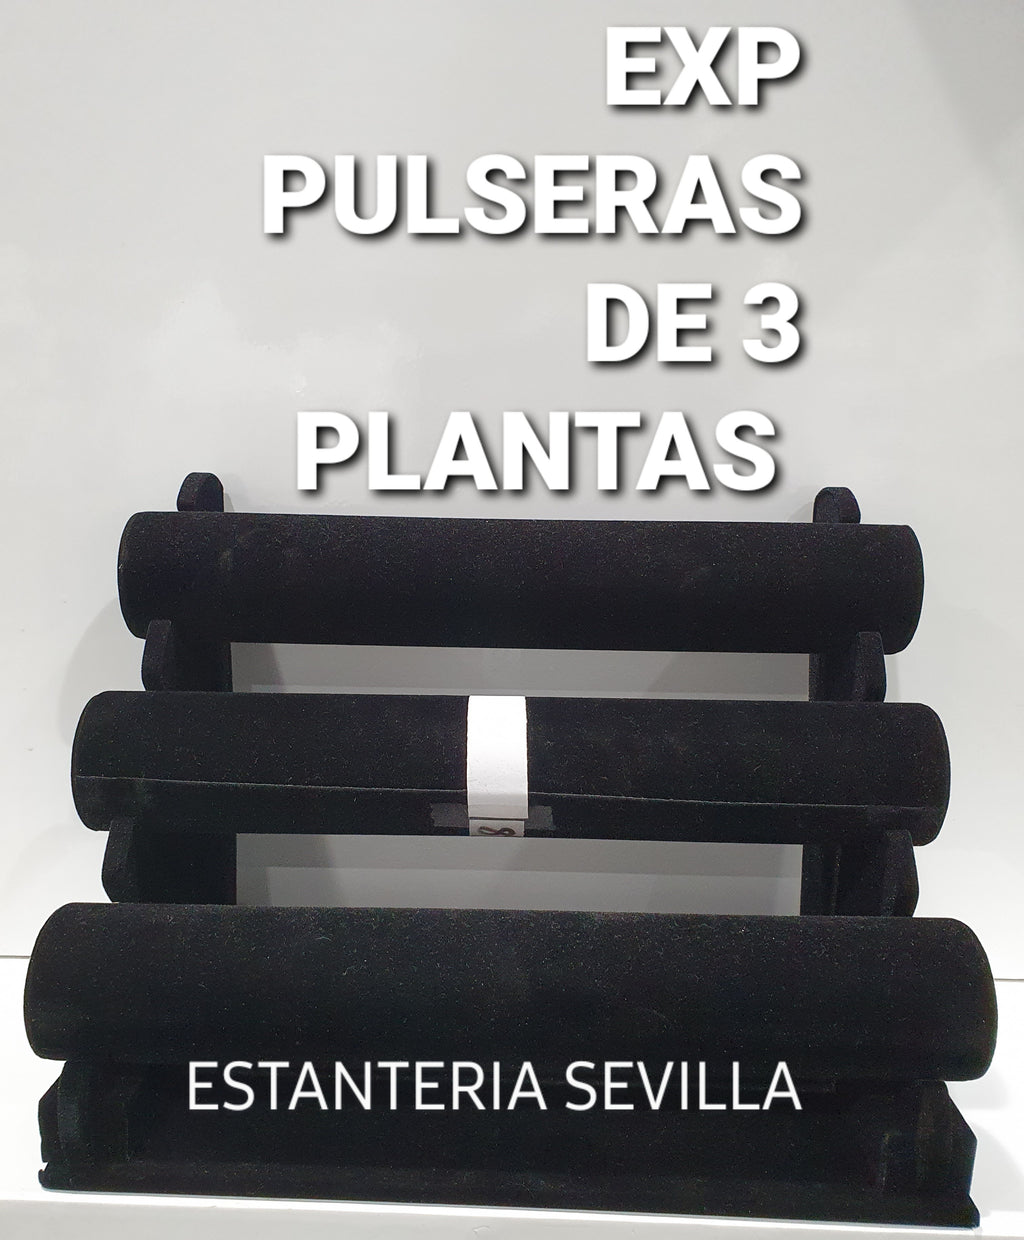 EXPOSITOR PULSERAS 3 PLANTAS Ref 89045